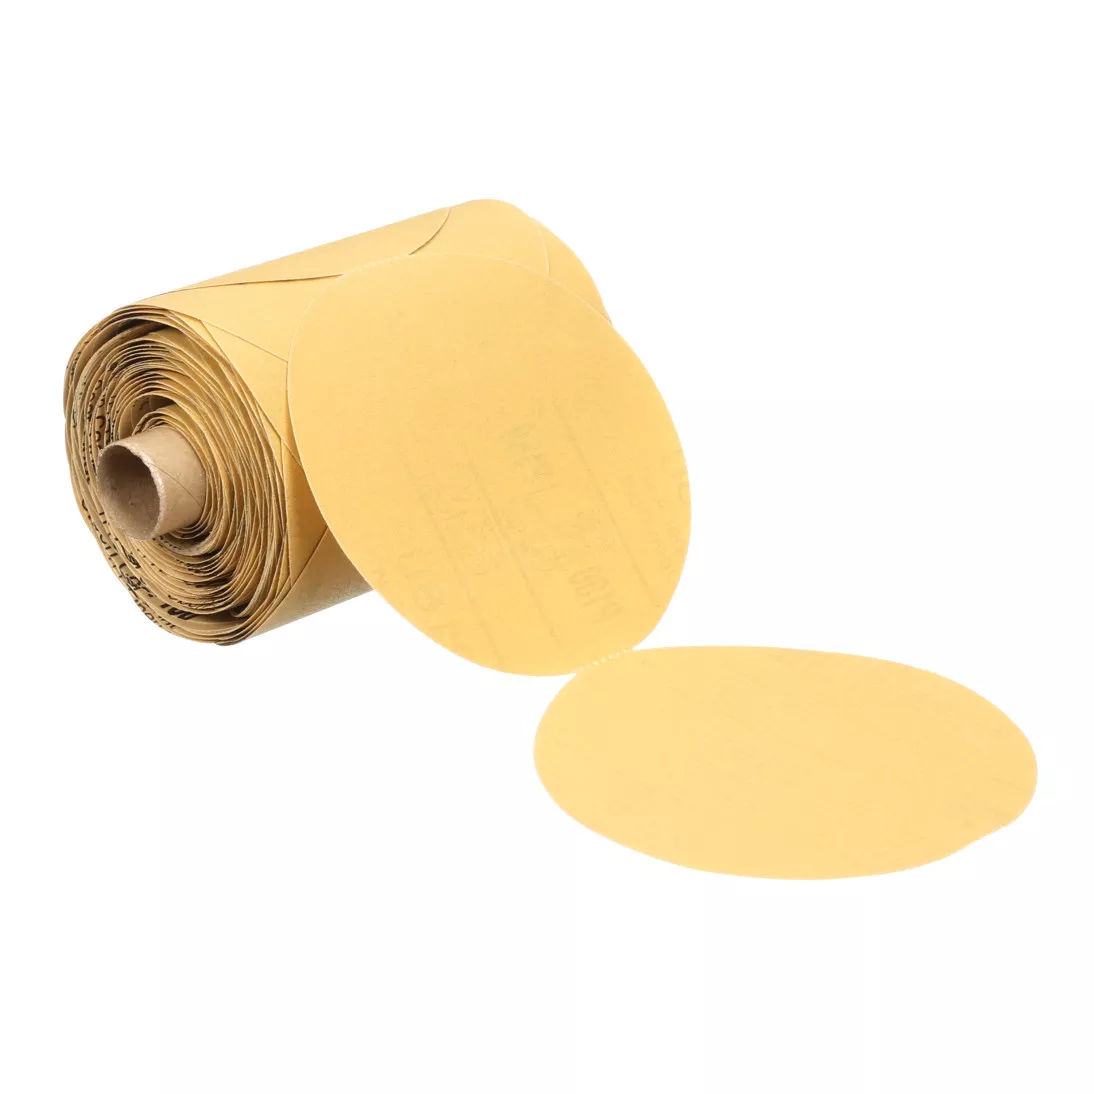 3M™ Stikit™ Gold Paper Disc Roll 216U, P400 A-weight, 3-1/2 in x NH, Die
350HH, 175 discs per roll